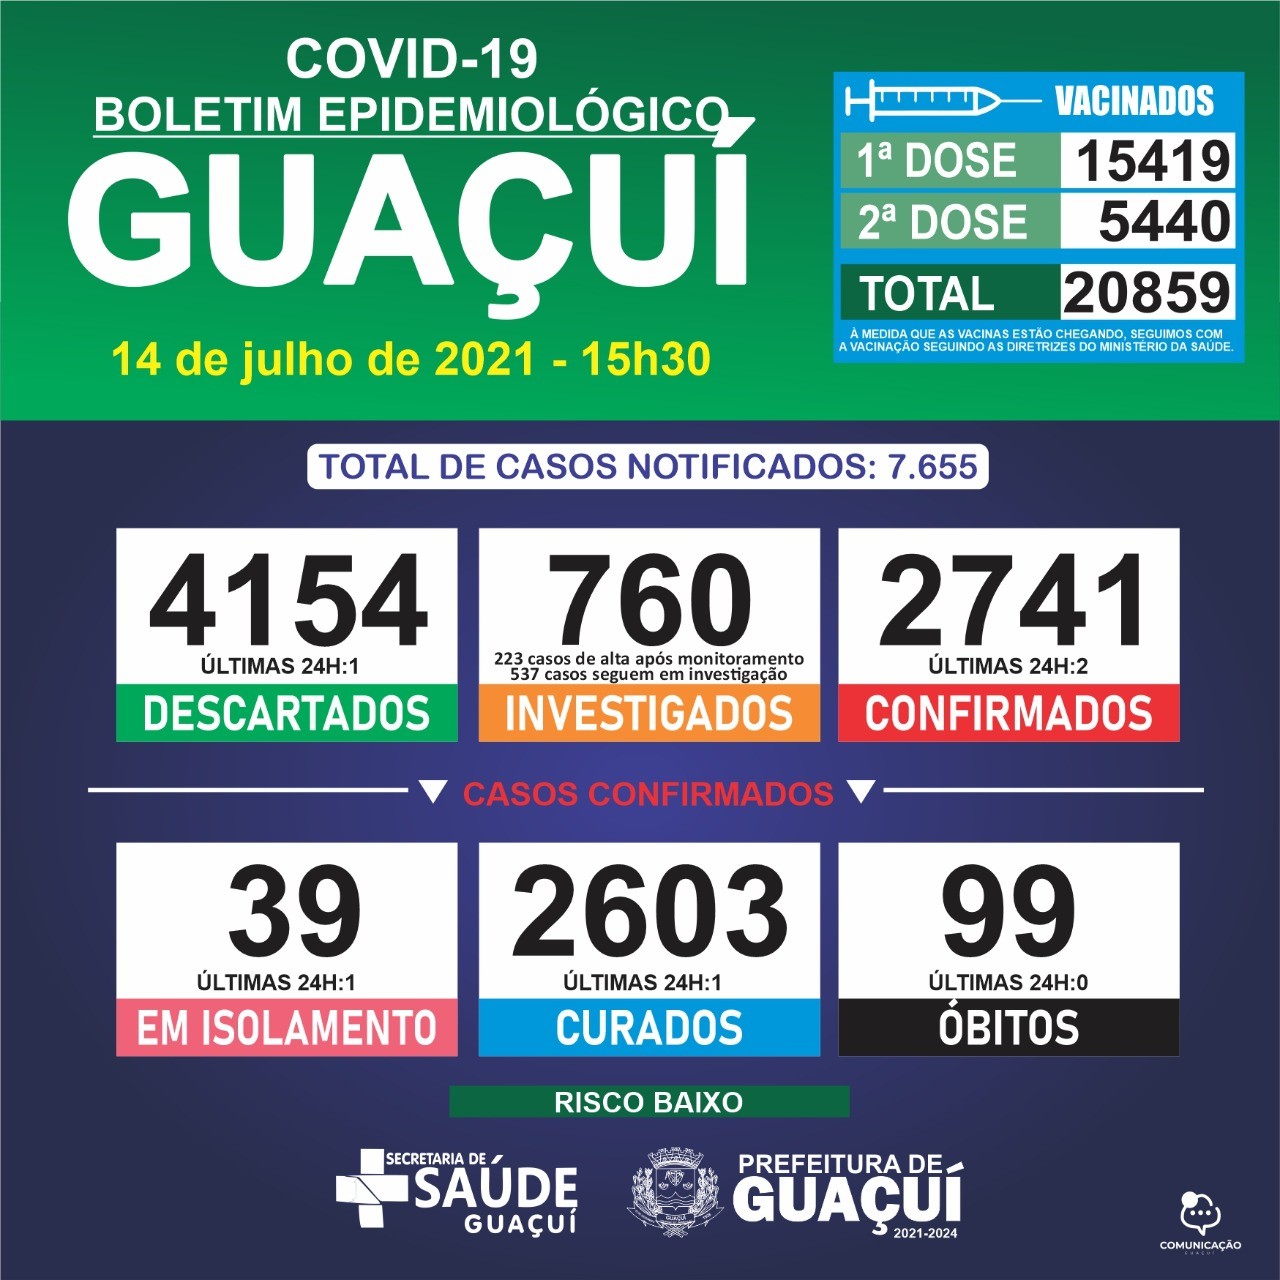 Boletim Epidemiológico 14/07/21: Guaçuí registra 2 casos confirmados e 1 curado nas últimas 24 horas